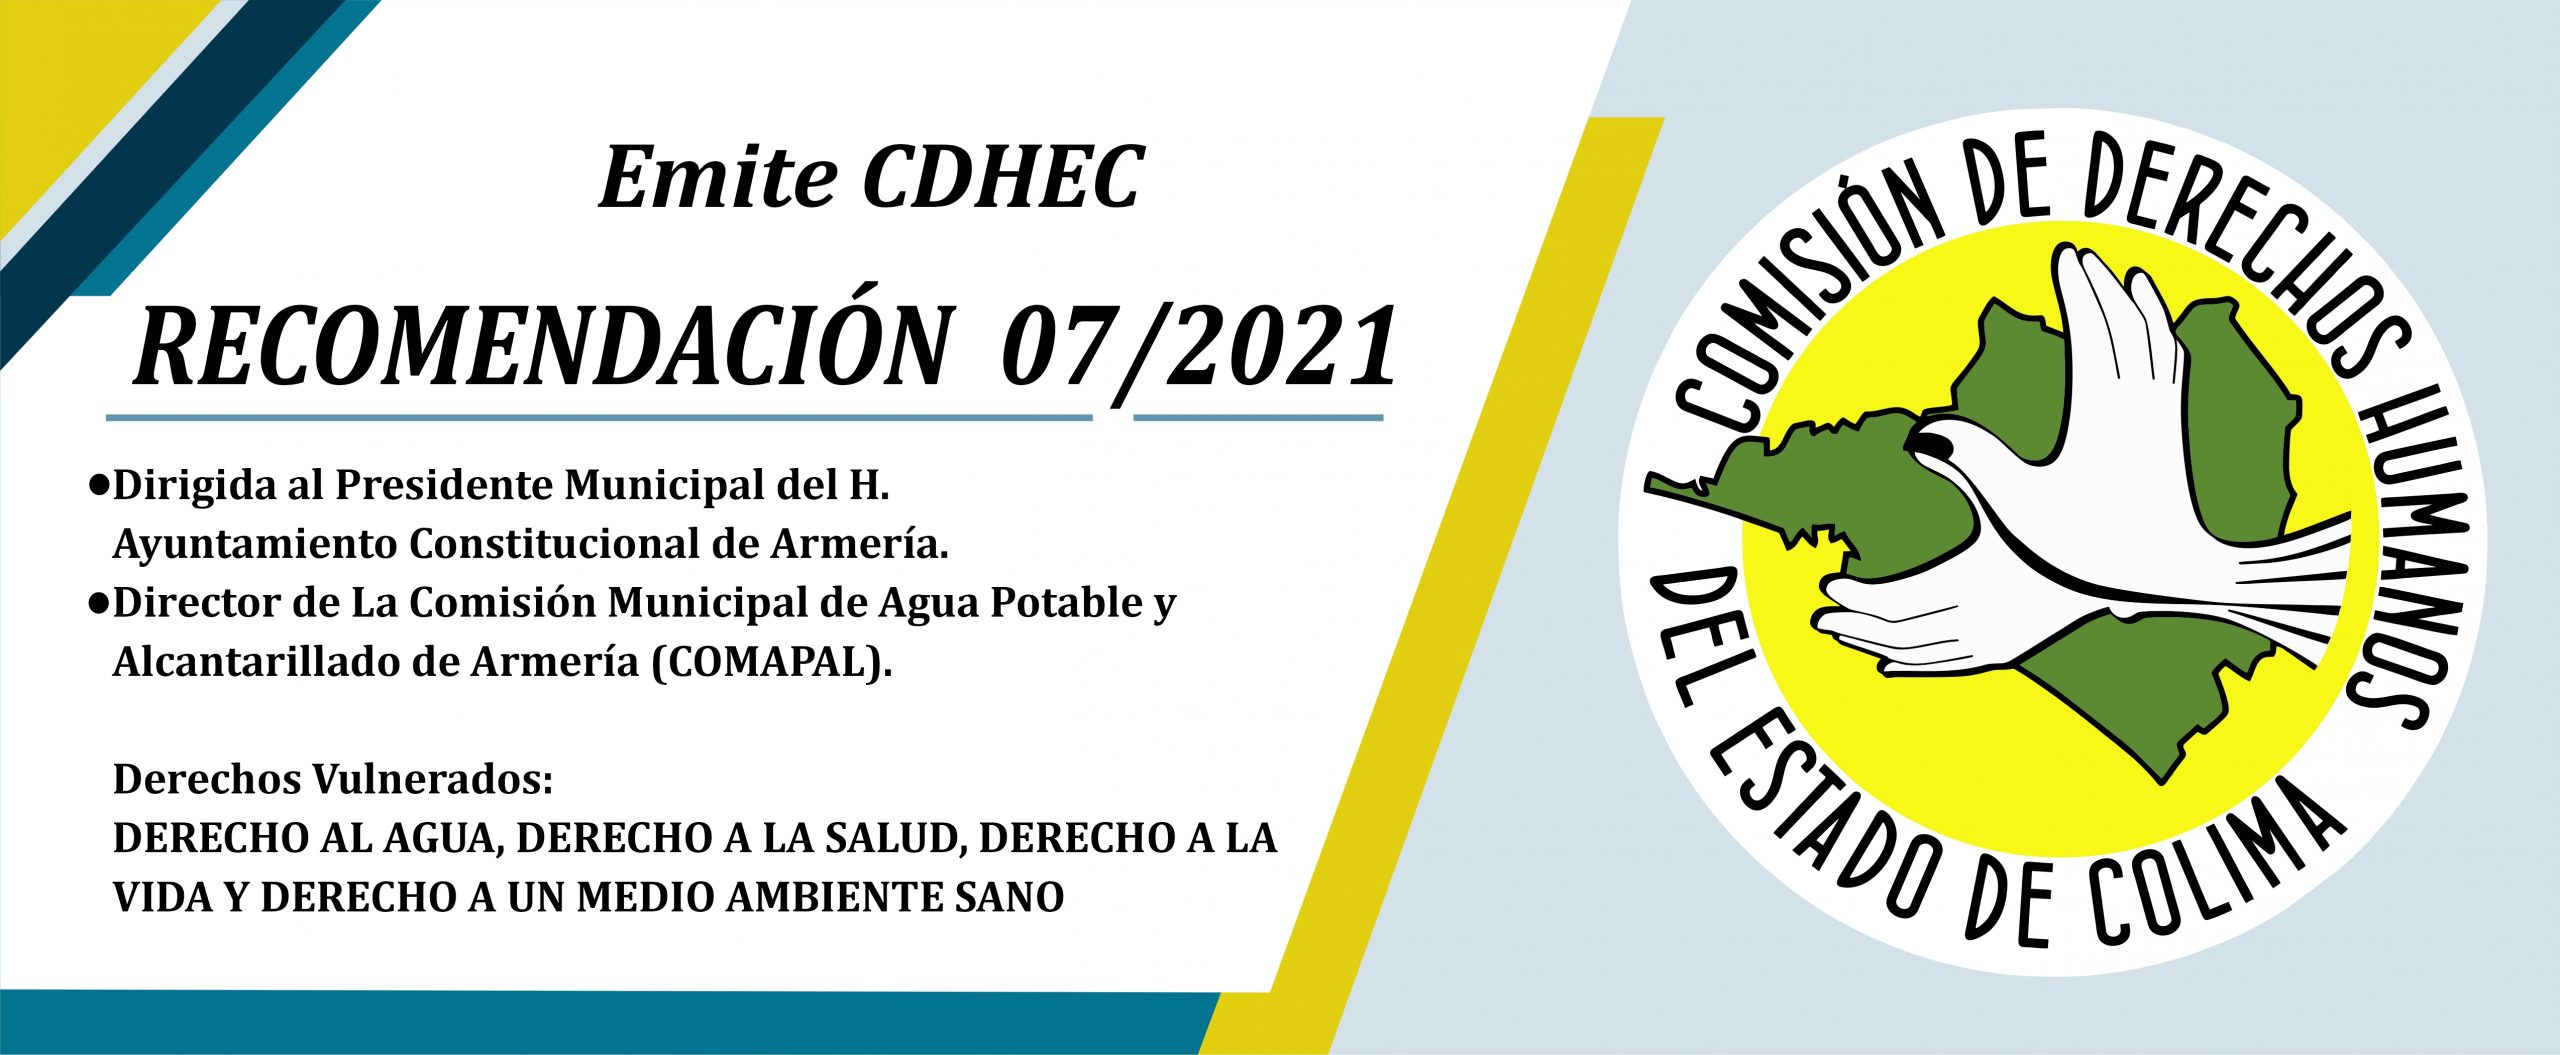 Emite CDHEC Recomendación al Alcalde de Armería y al Director de la  Comisión Municipal de Agua Potable y Alcantarillado